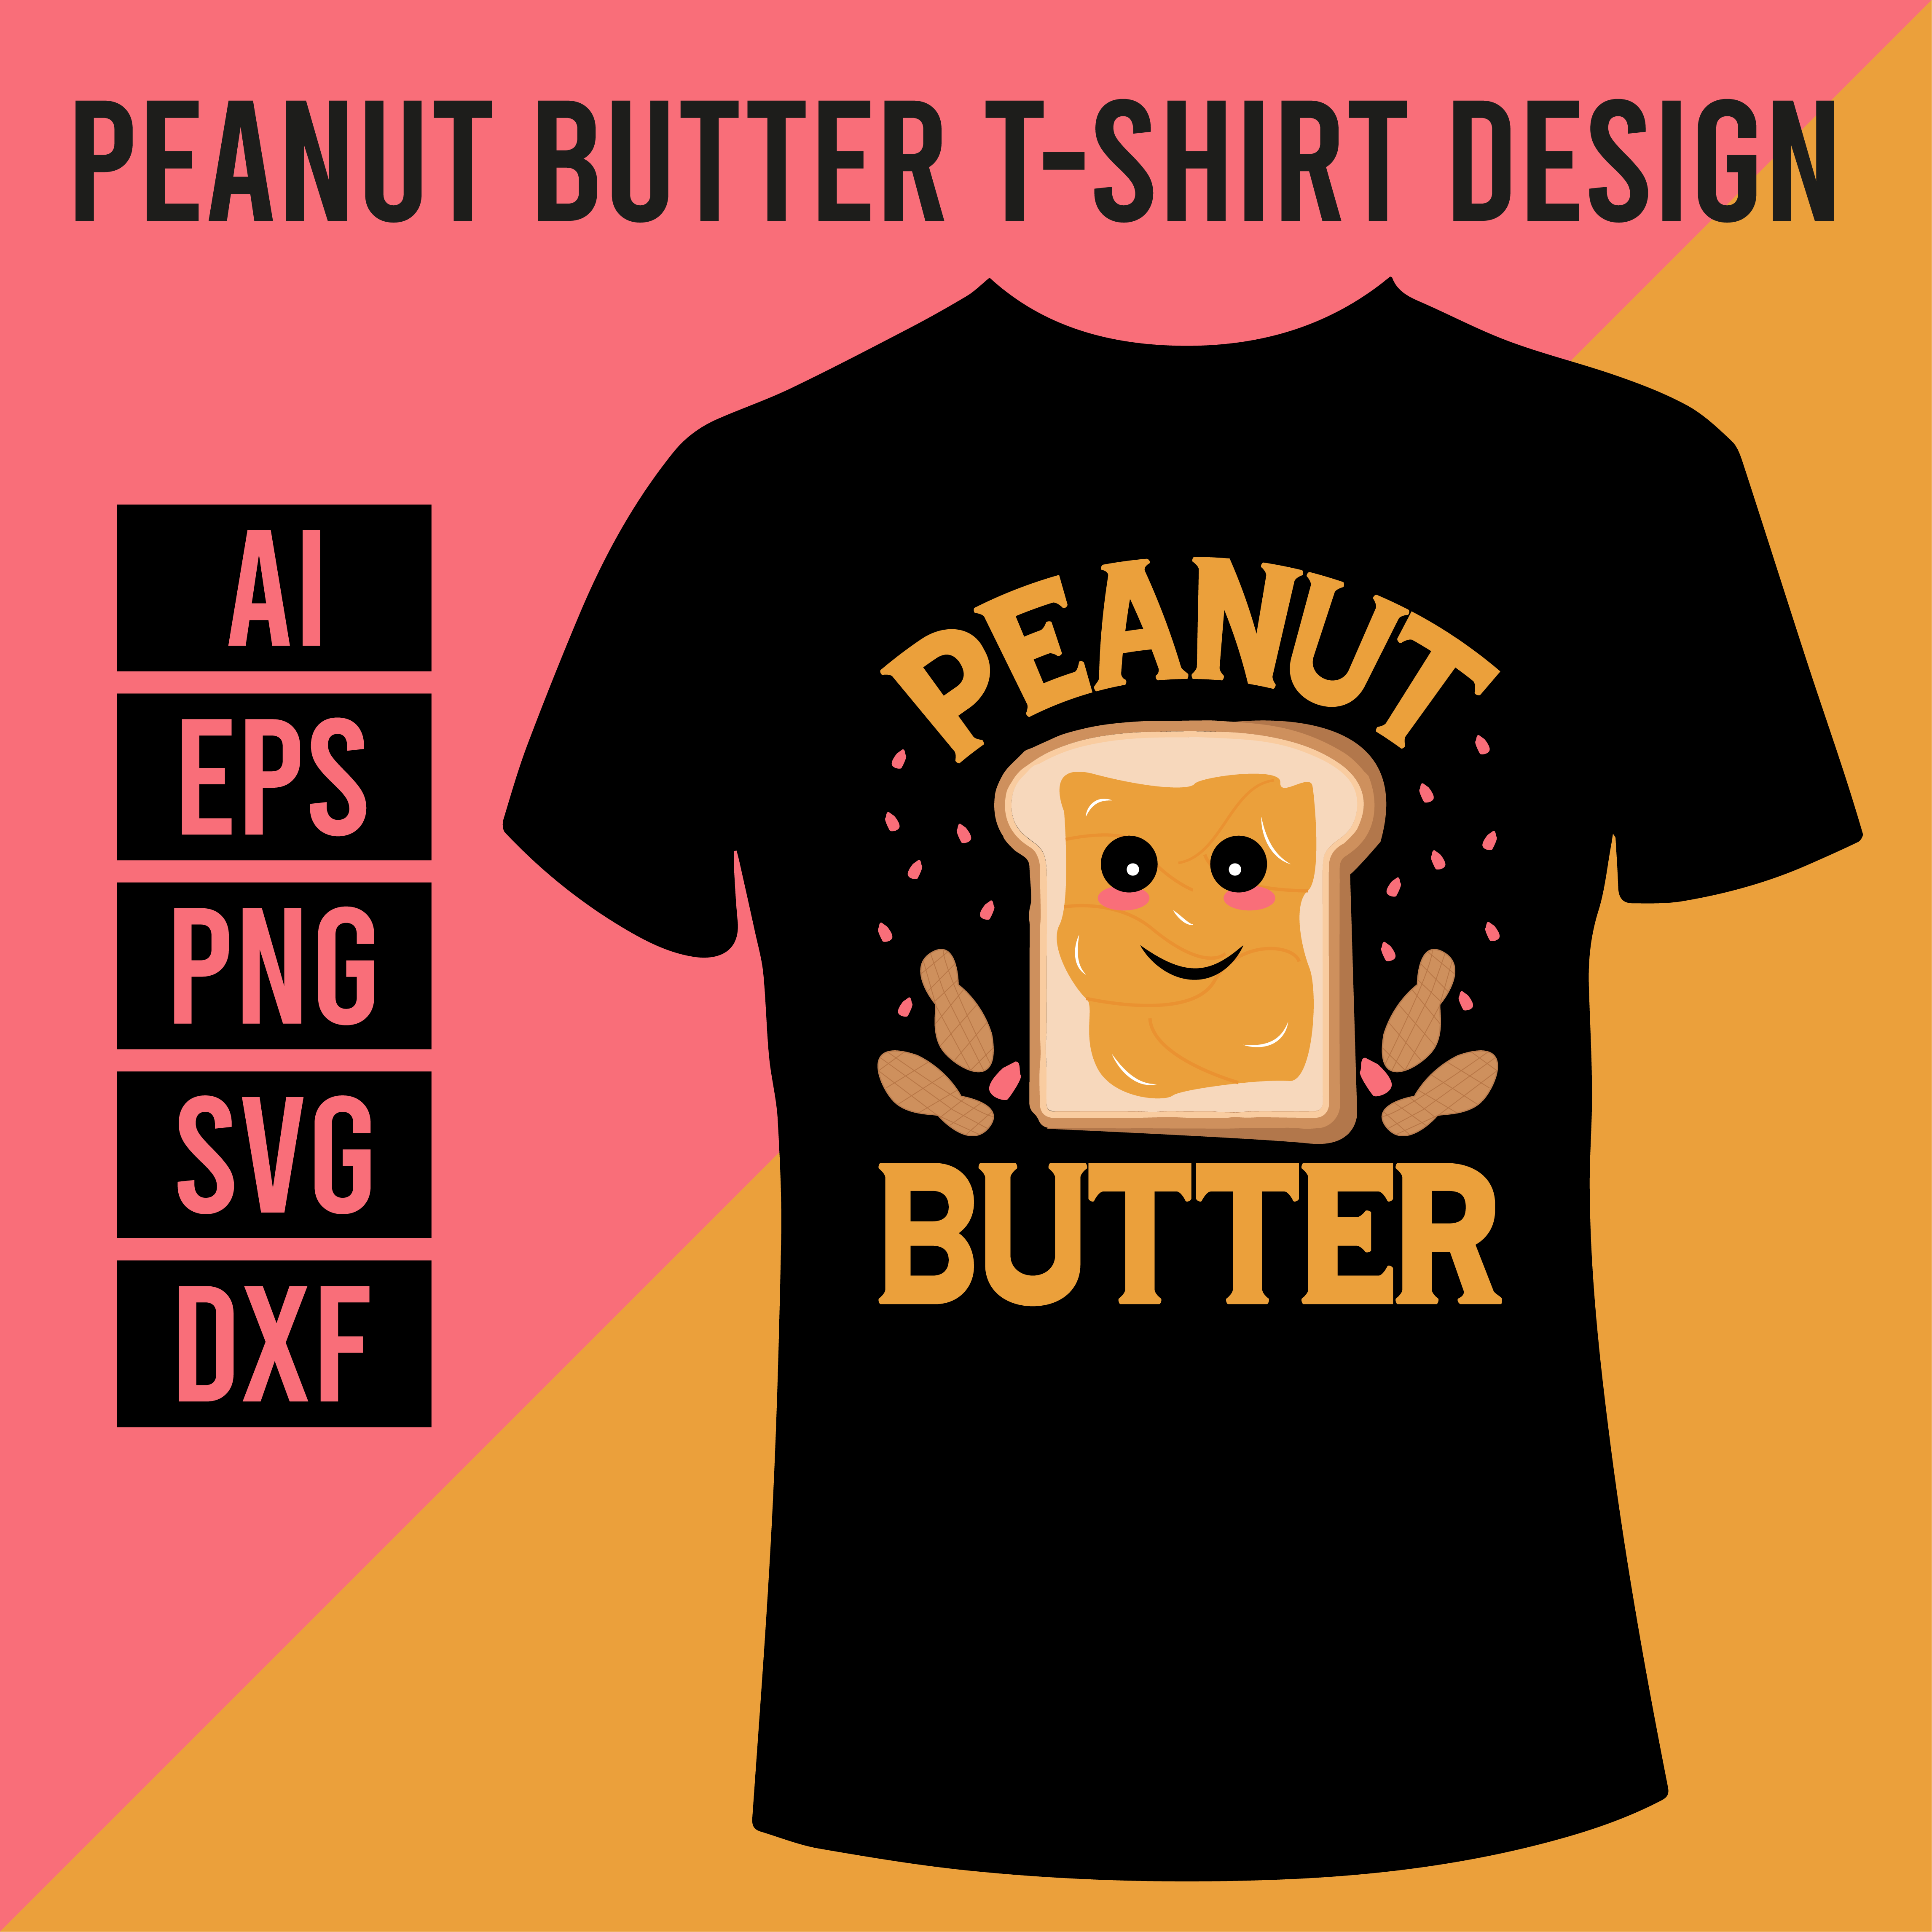 Peanut Butter T-Shirt Design main cover